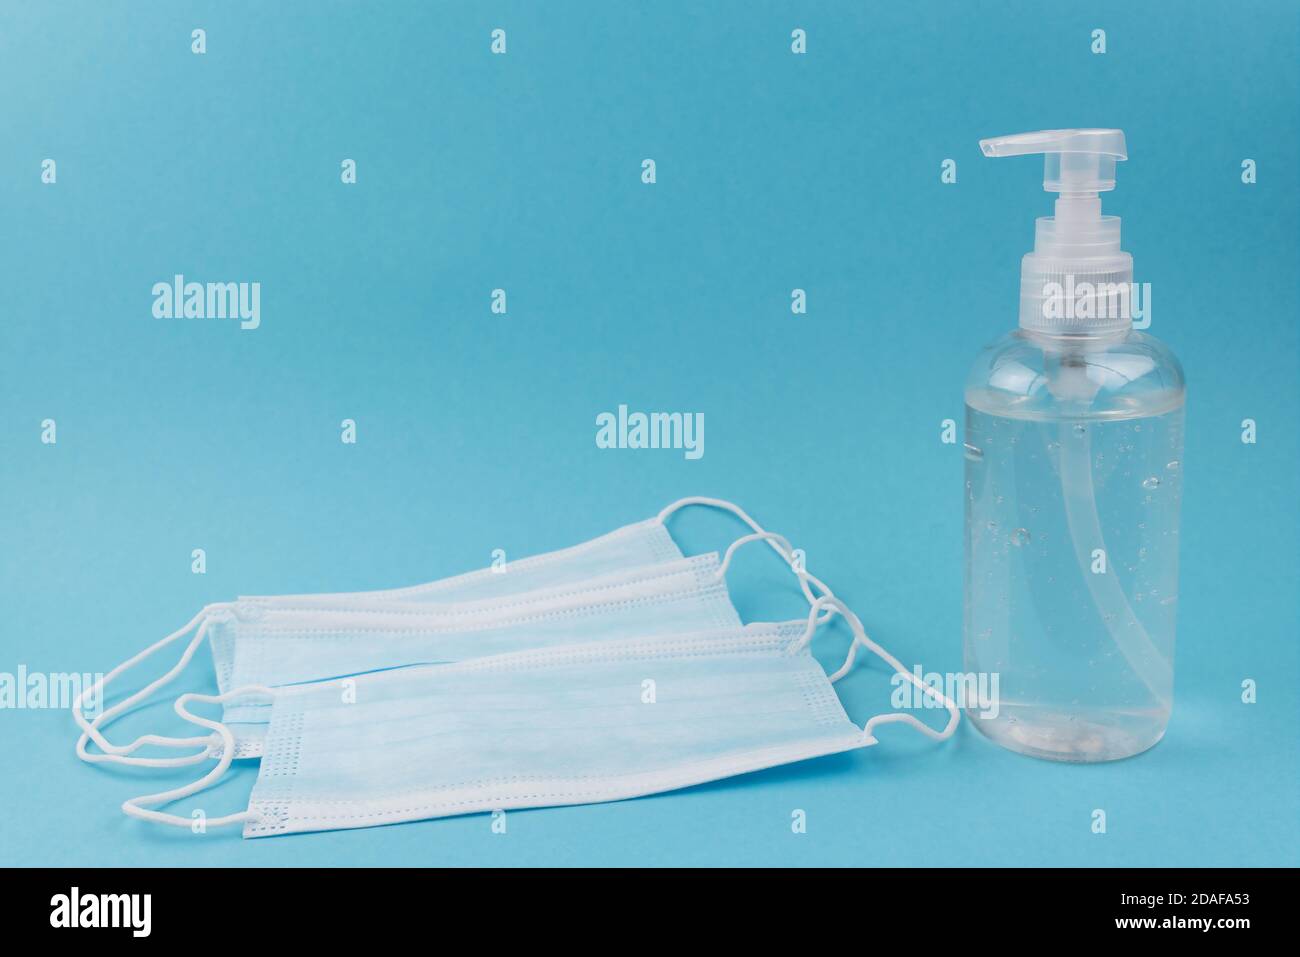 Einweg-Gesichtsmasken und Handdesinfektionsmittel in der Spenderflasche gegen Blauer Hintergrund Stockfoto